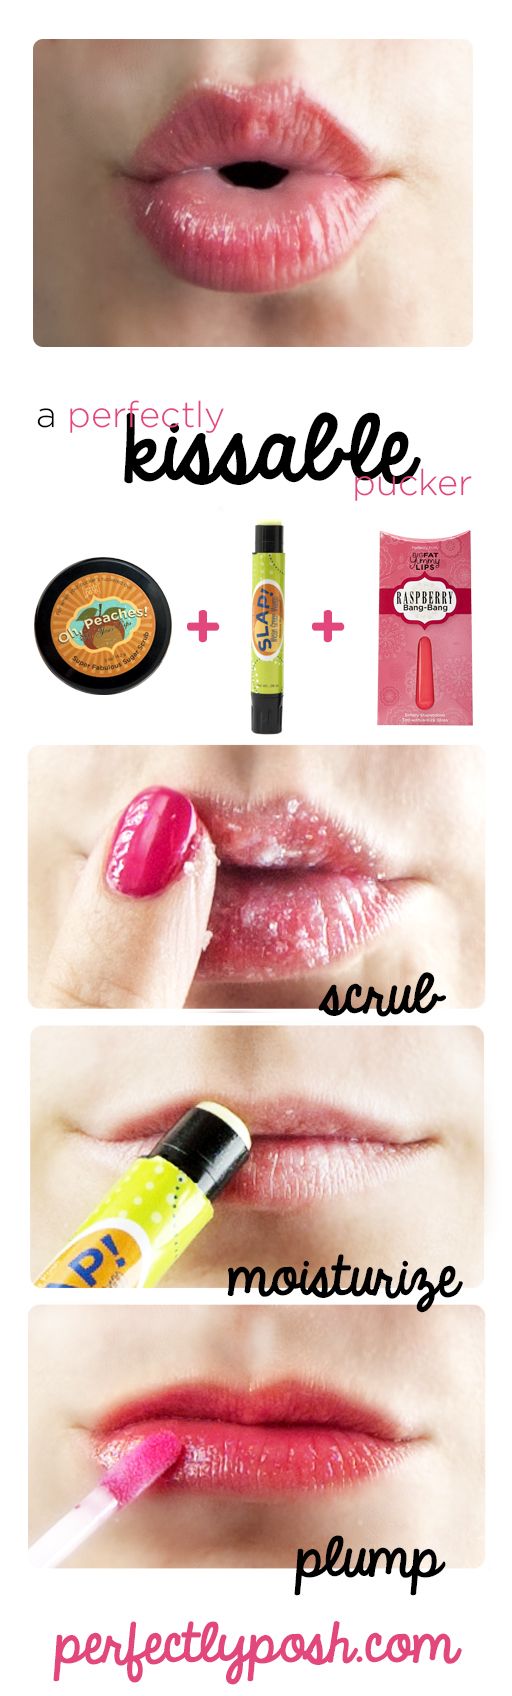 kissable lips